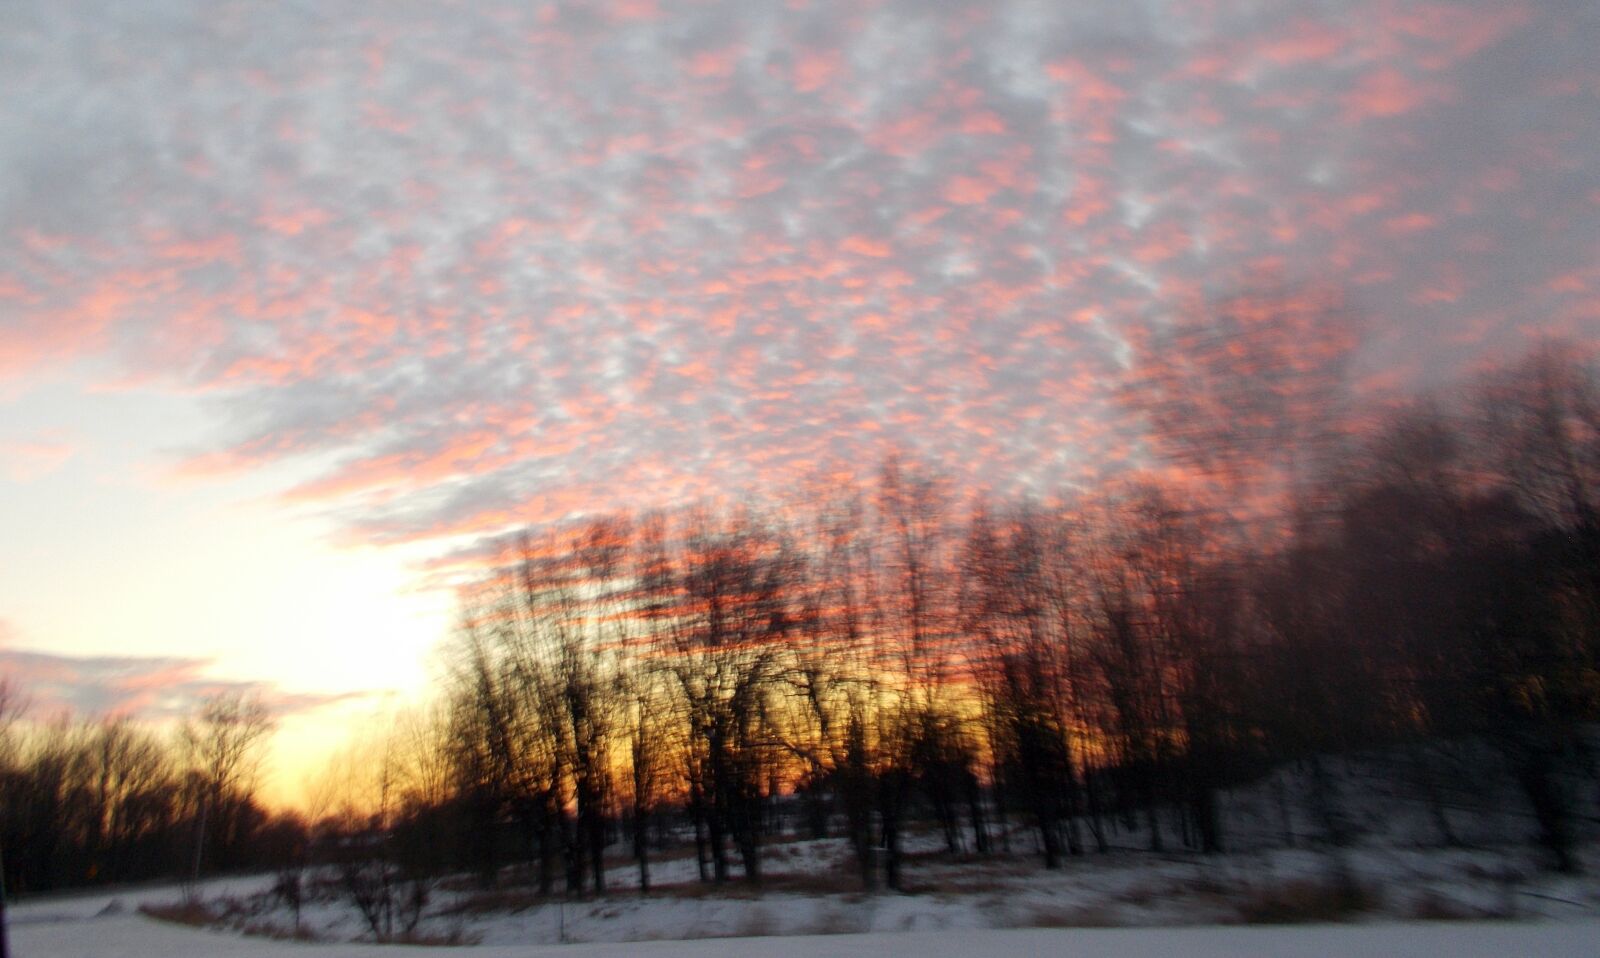 Nikon Coolpix A10 sample photo. Sky, sunset, nature photography